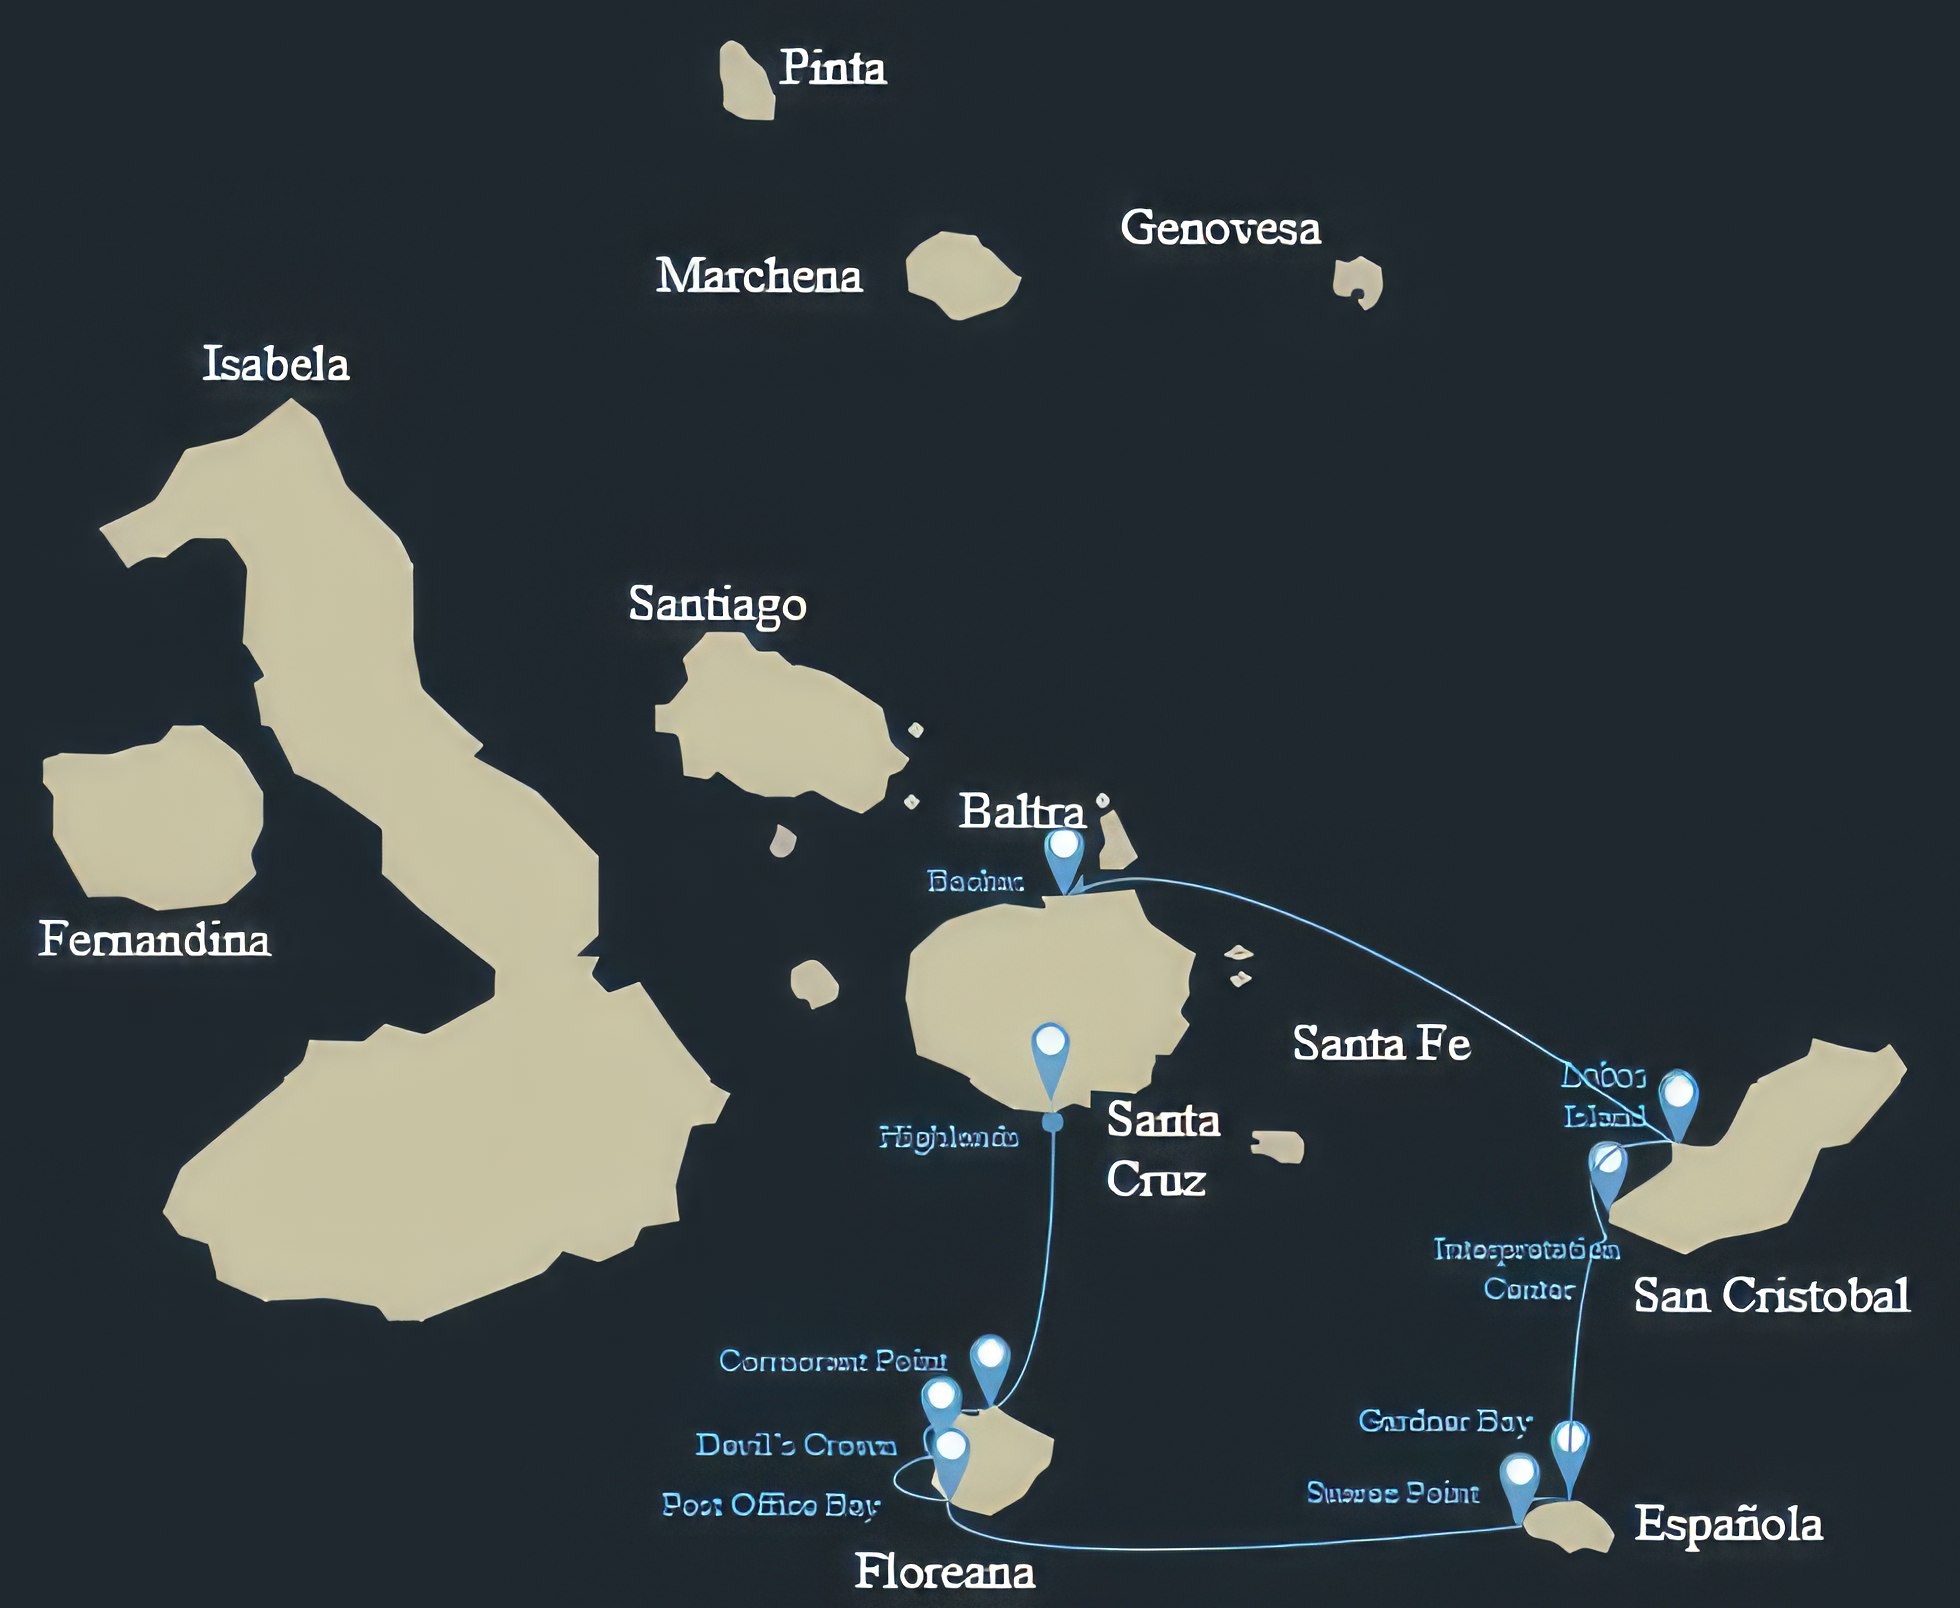 Bonita Galapagos Cruise Yacht Itinerary B